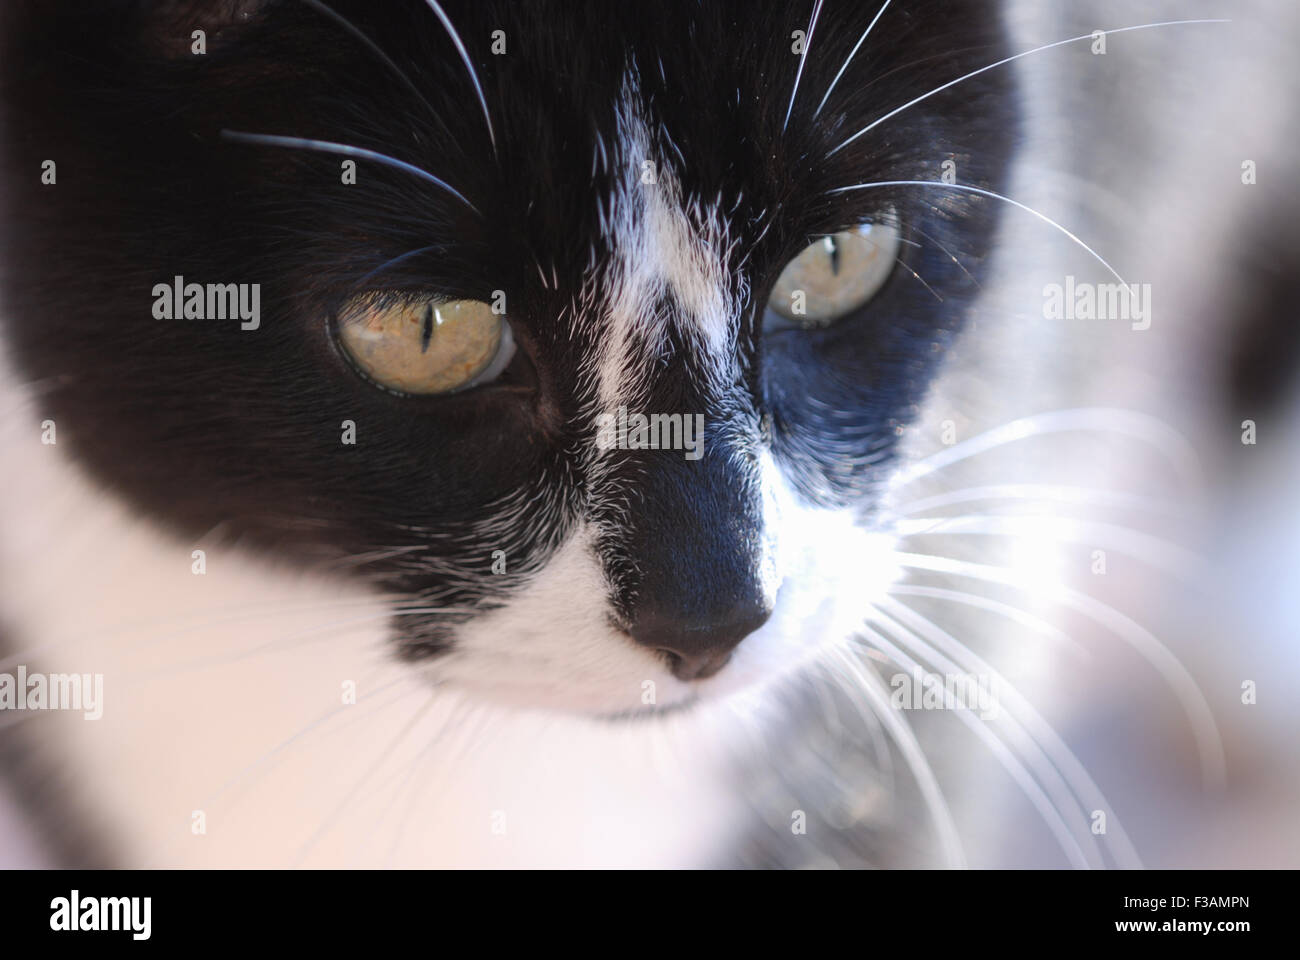 Black & white cat, portrait Stock Photo